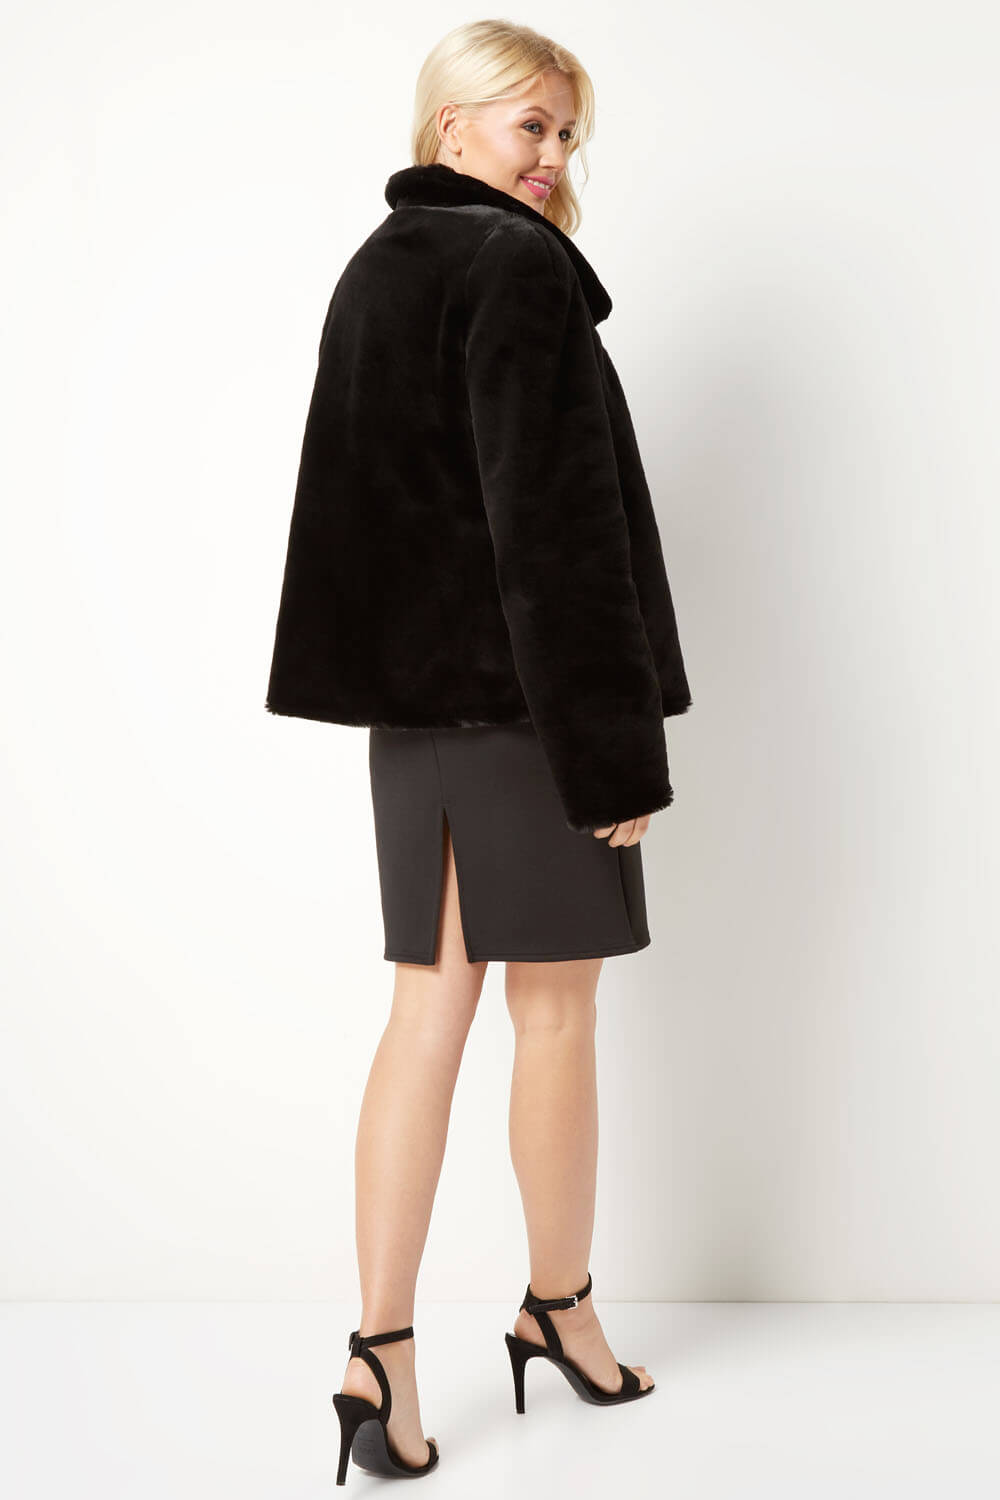 Black Short Faux Fur Jacket, Image 3 of 4